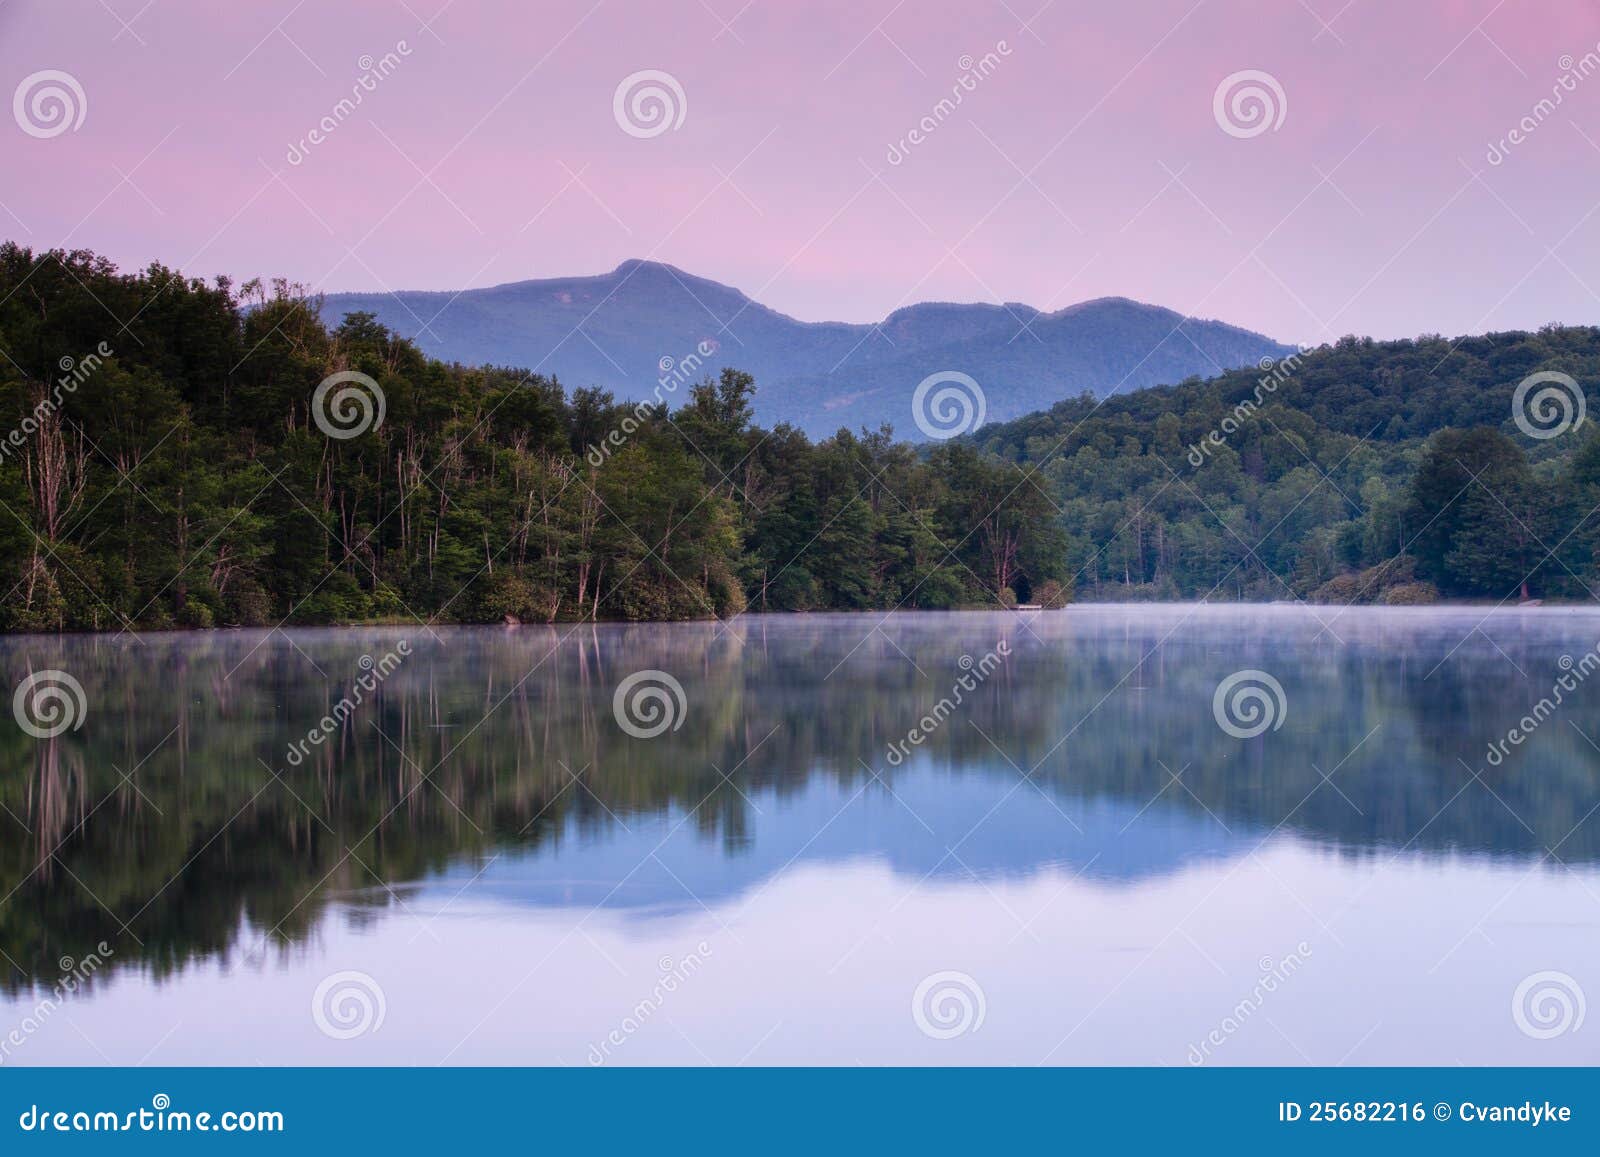 landscape julian price lake blue ridge pkwy nc